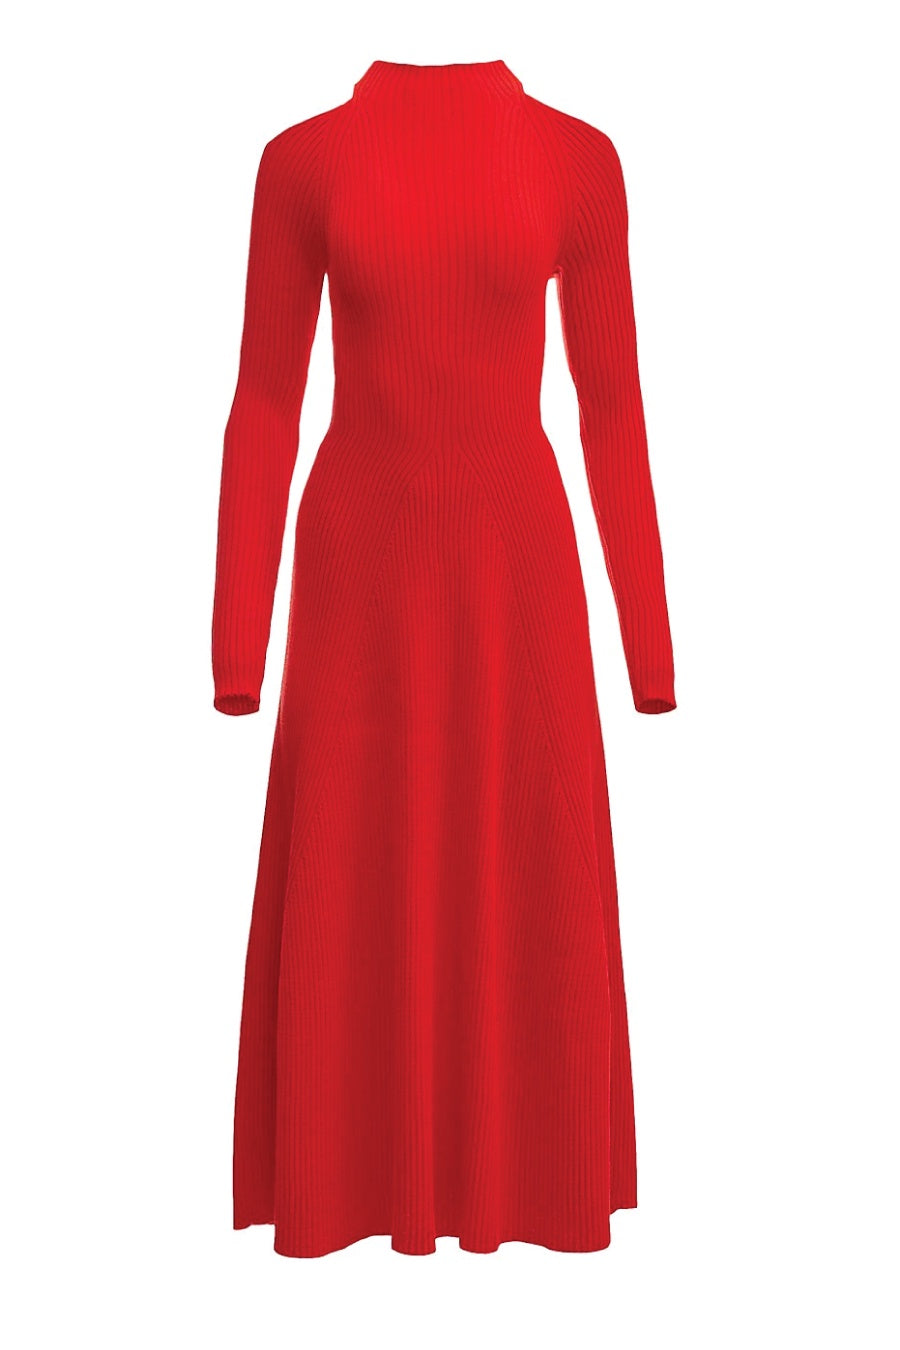 A.W.A.K.E. Mode Shoulder Cut Out Midi Dress - Red